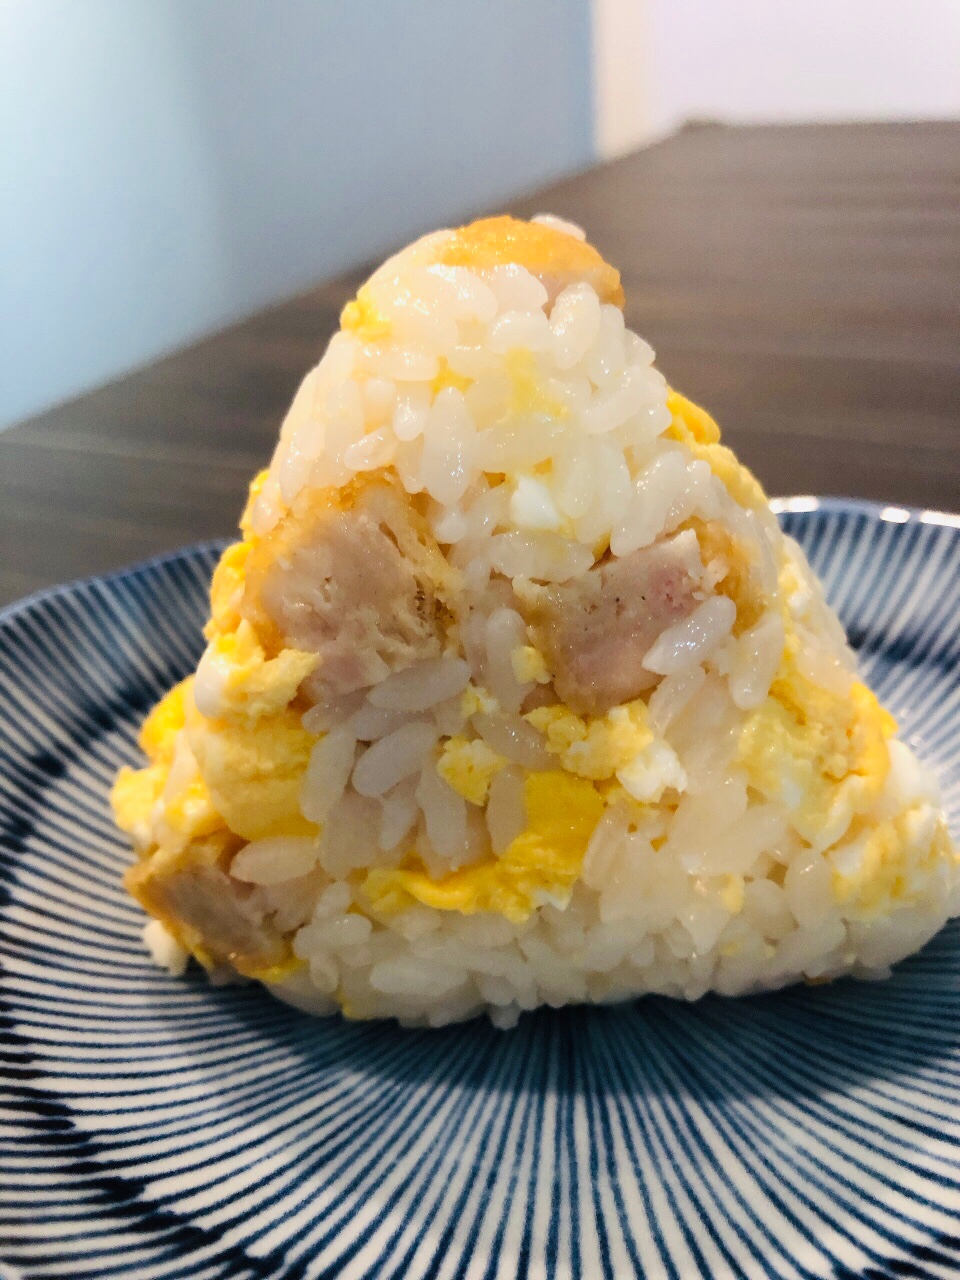 【ひと手間おむすび】冷凍チキンナゲットマヨ卵